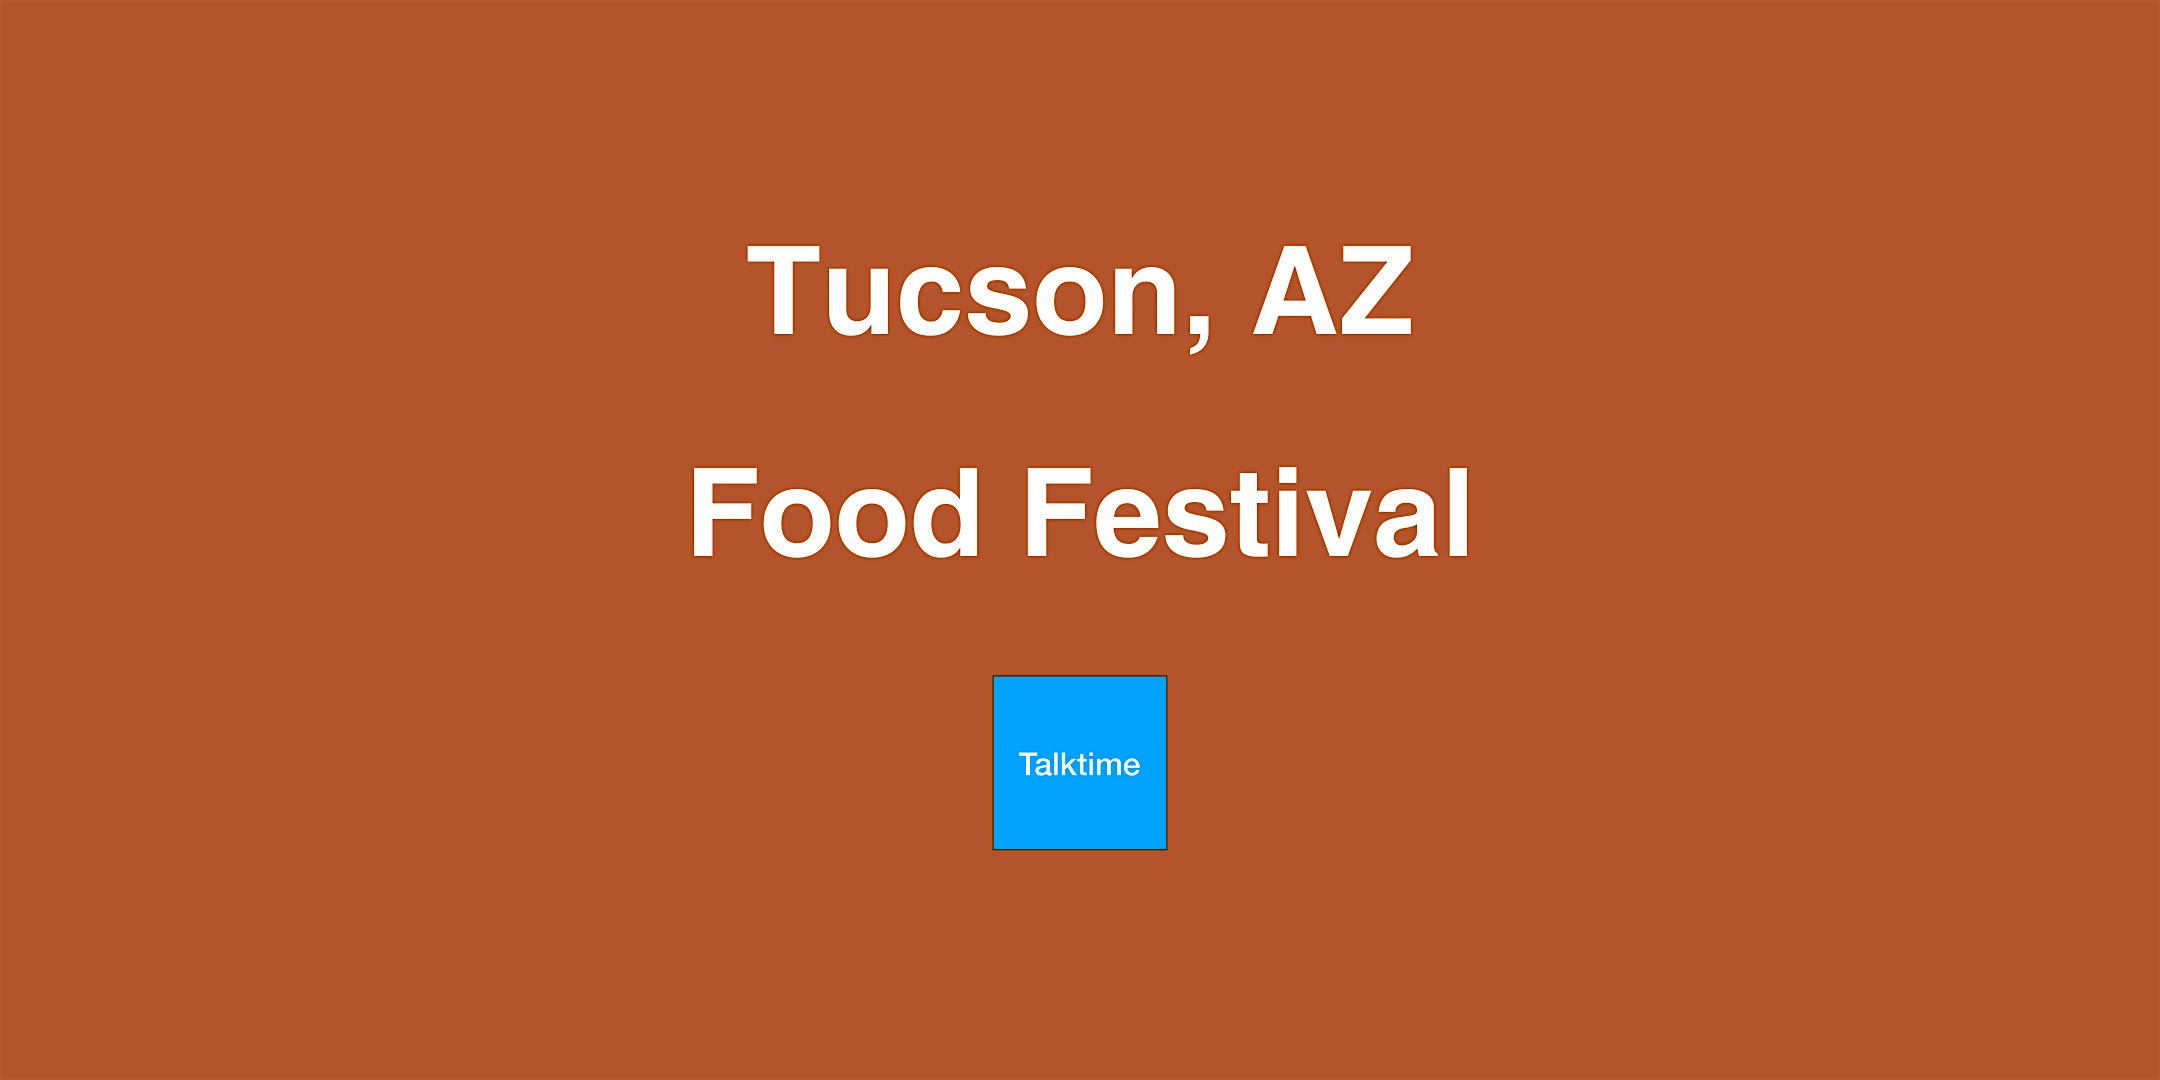 Food Festival - Tucson